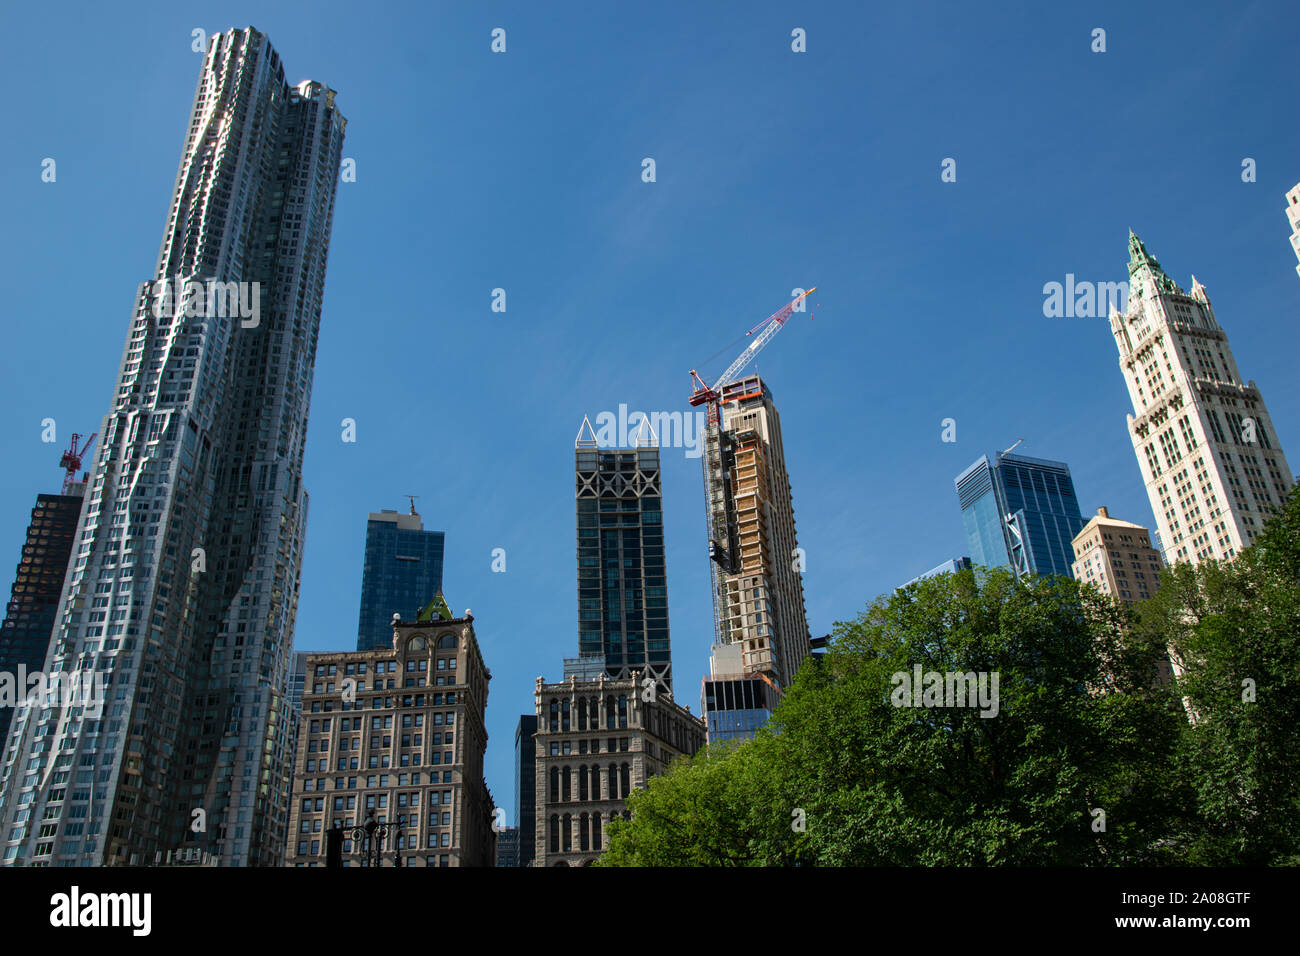 Ganz rechts ist das Woolworth Building zu sehen, ganz links das Gehry Gebäude. An einem Haus in der Mitte wird noch gebaut. Stock Photo